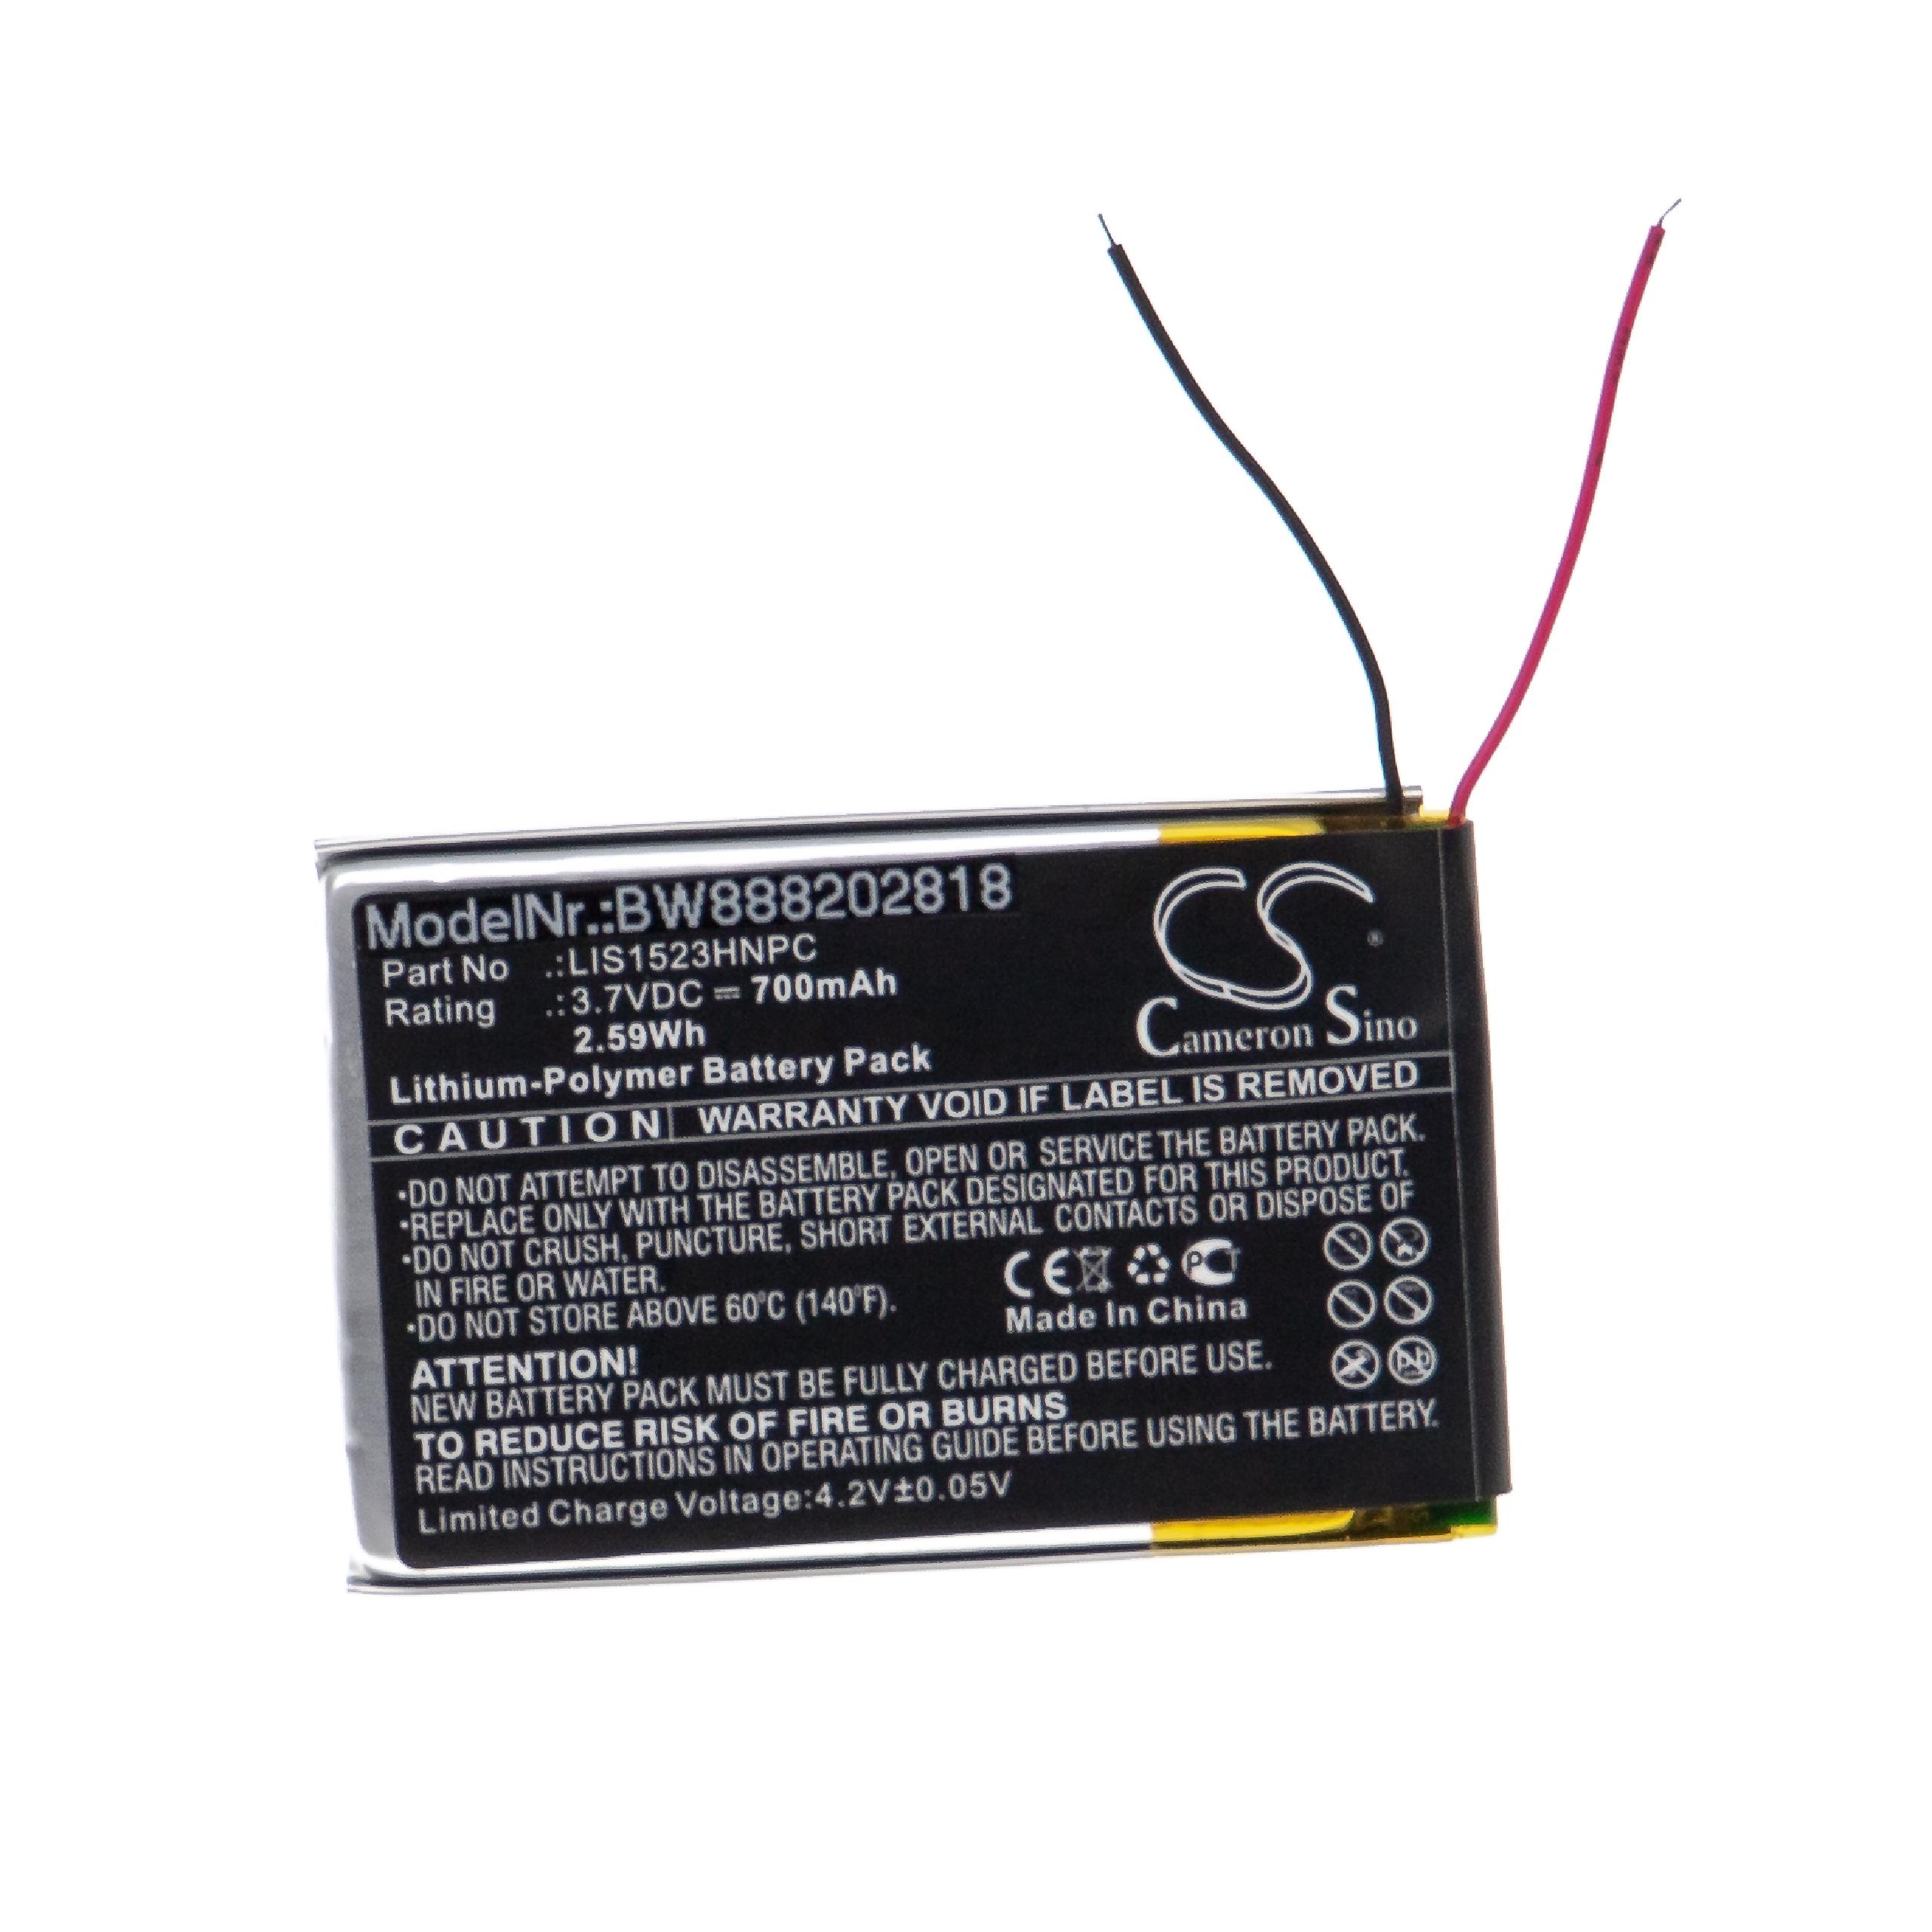 Batterie remplace Sony LIS1523HNPC pour casque audio - 700mAh 3,7V Li-polymère